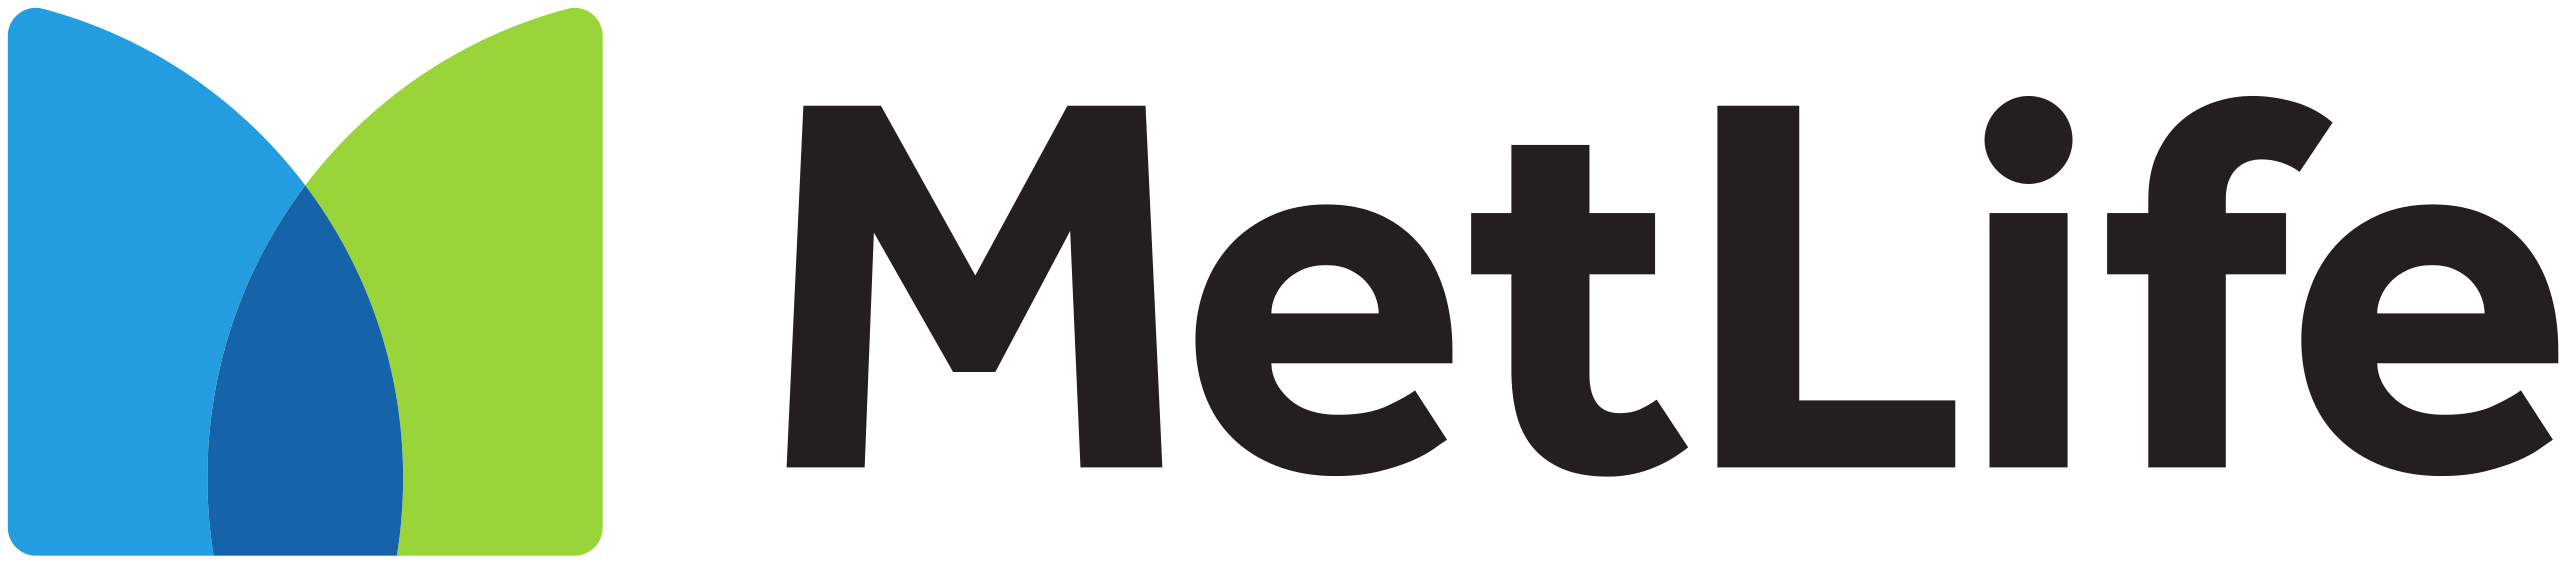 2560px-MetLife_logo.svg